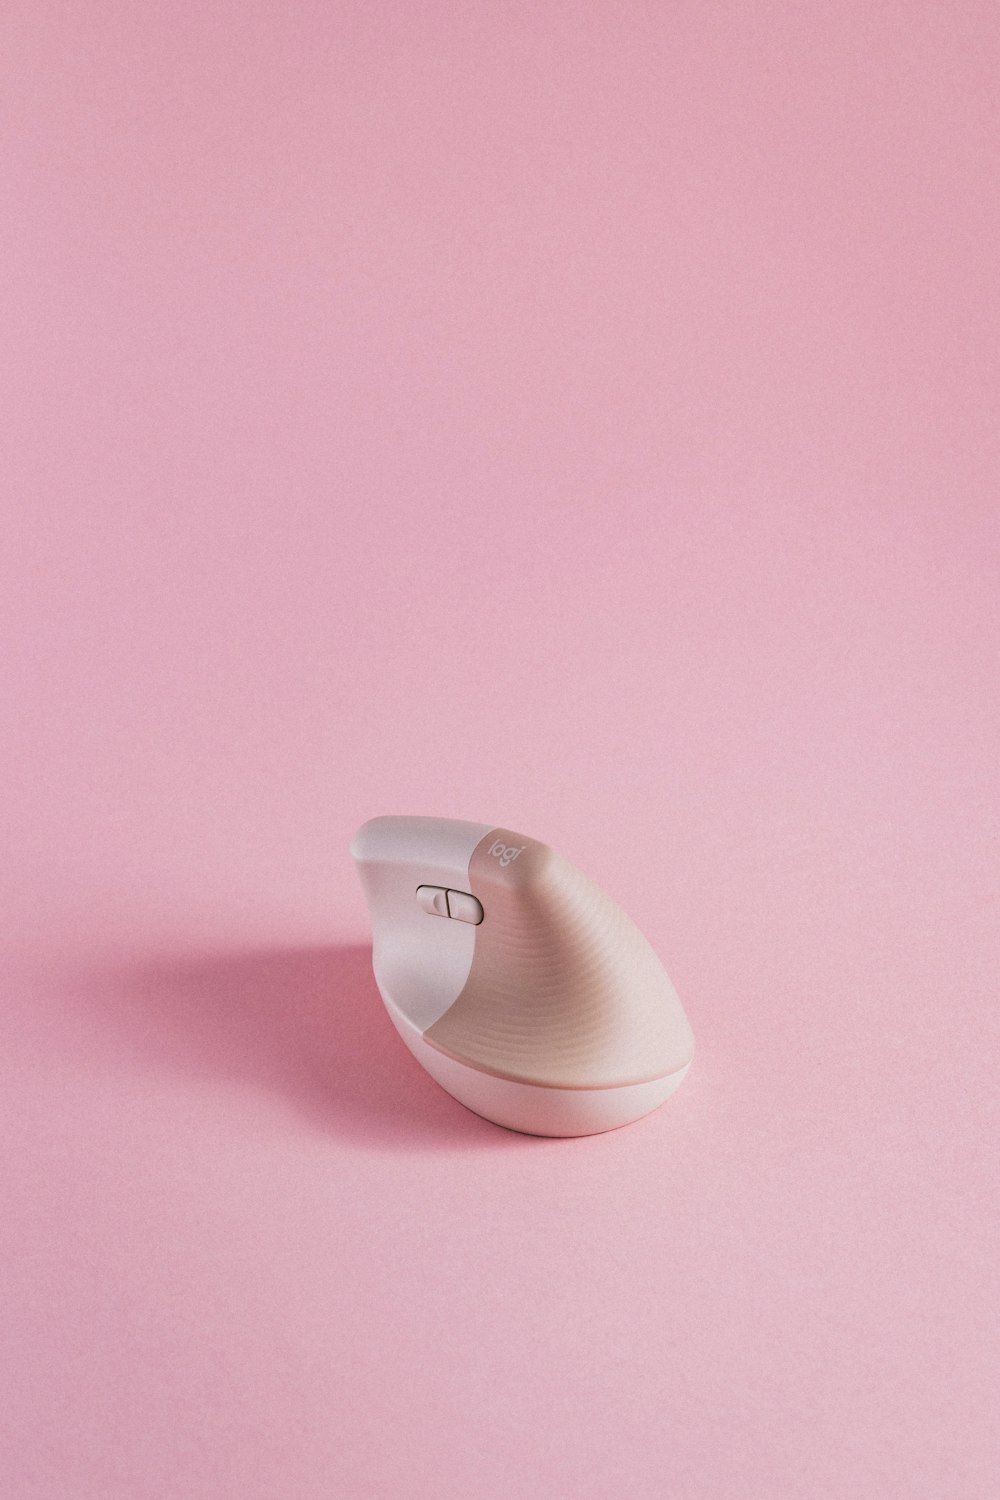 Un ratón de ordenador sentado encima de una superficie rosada